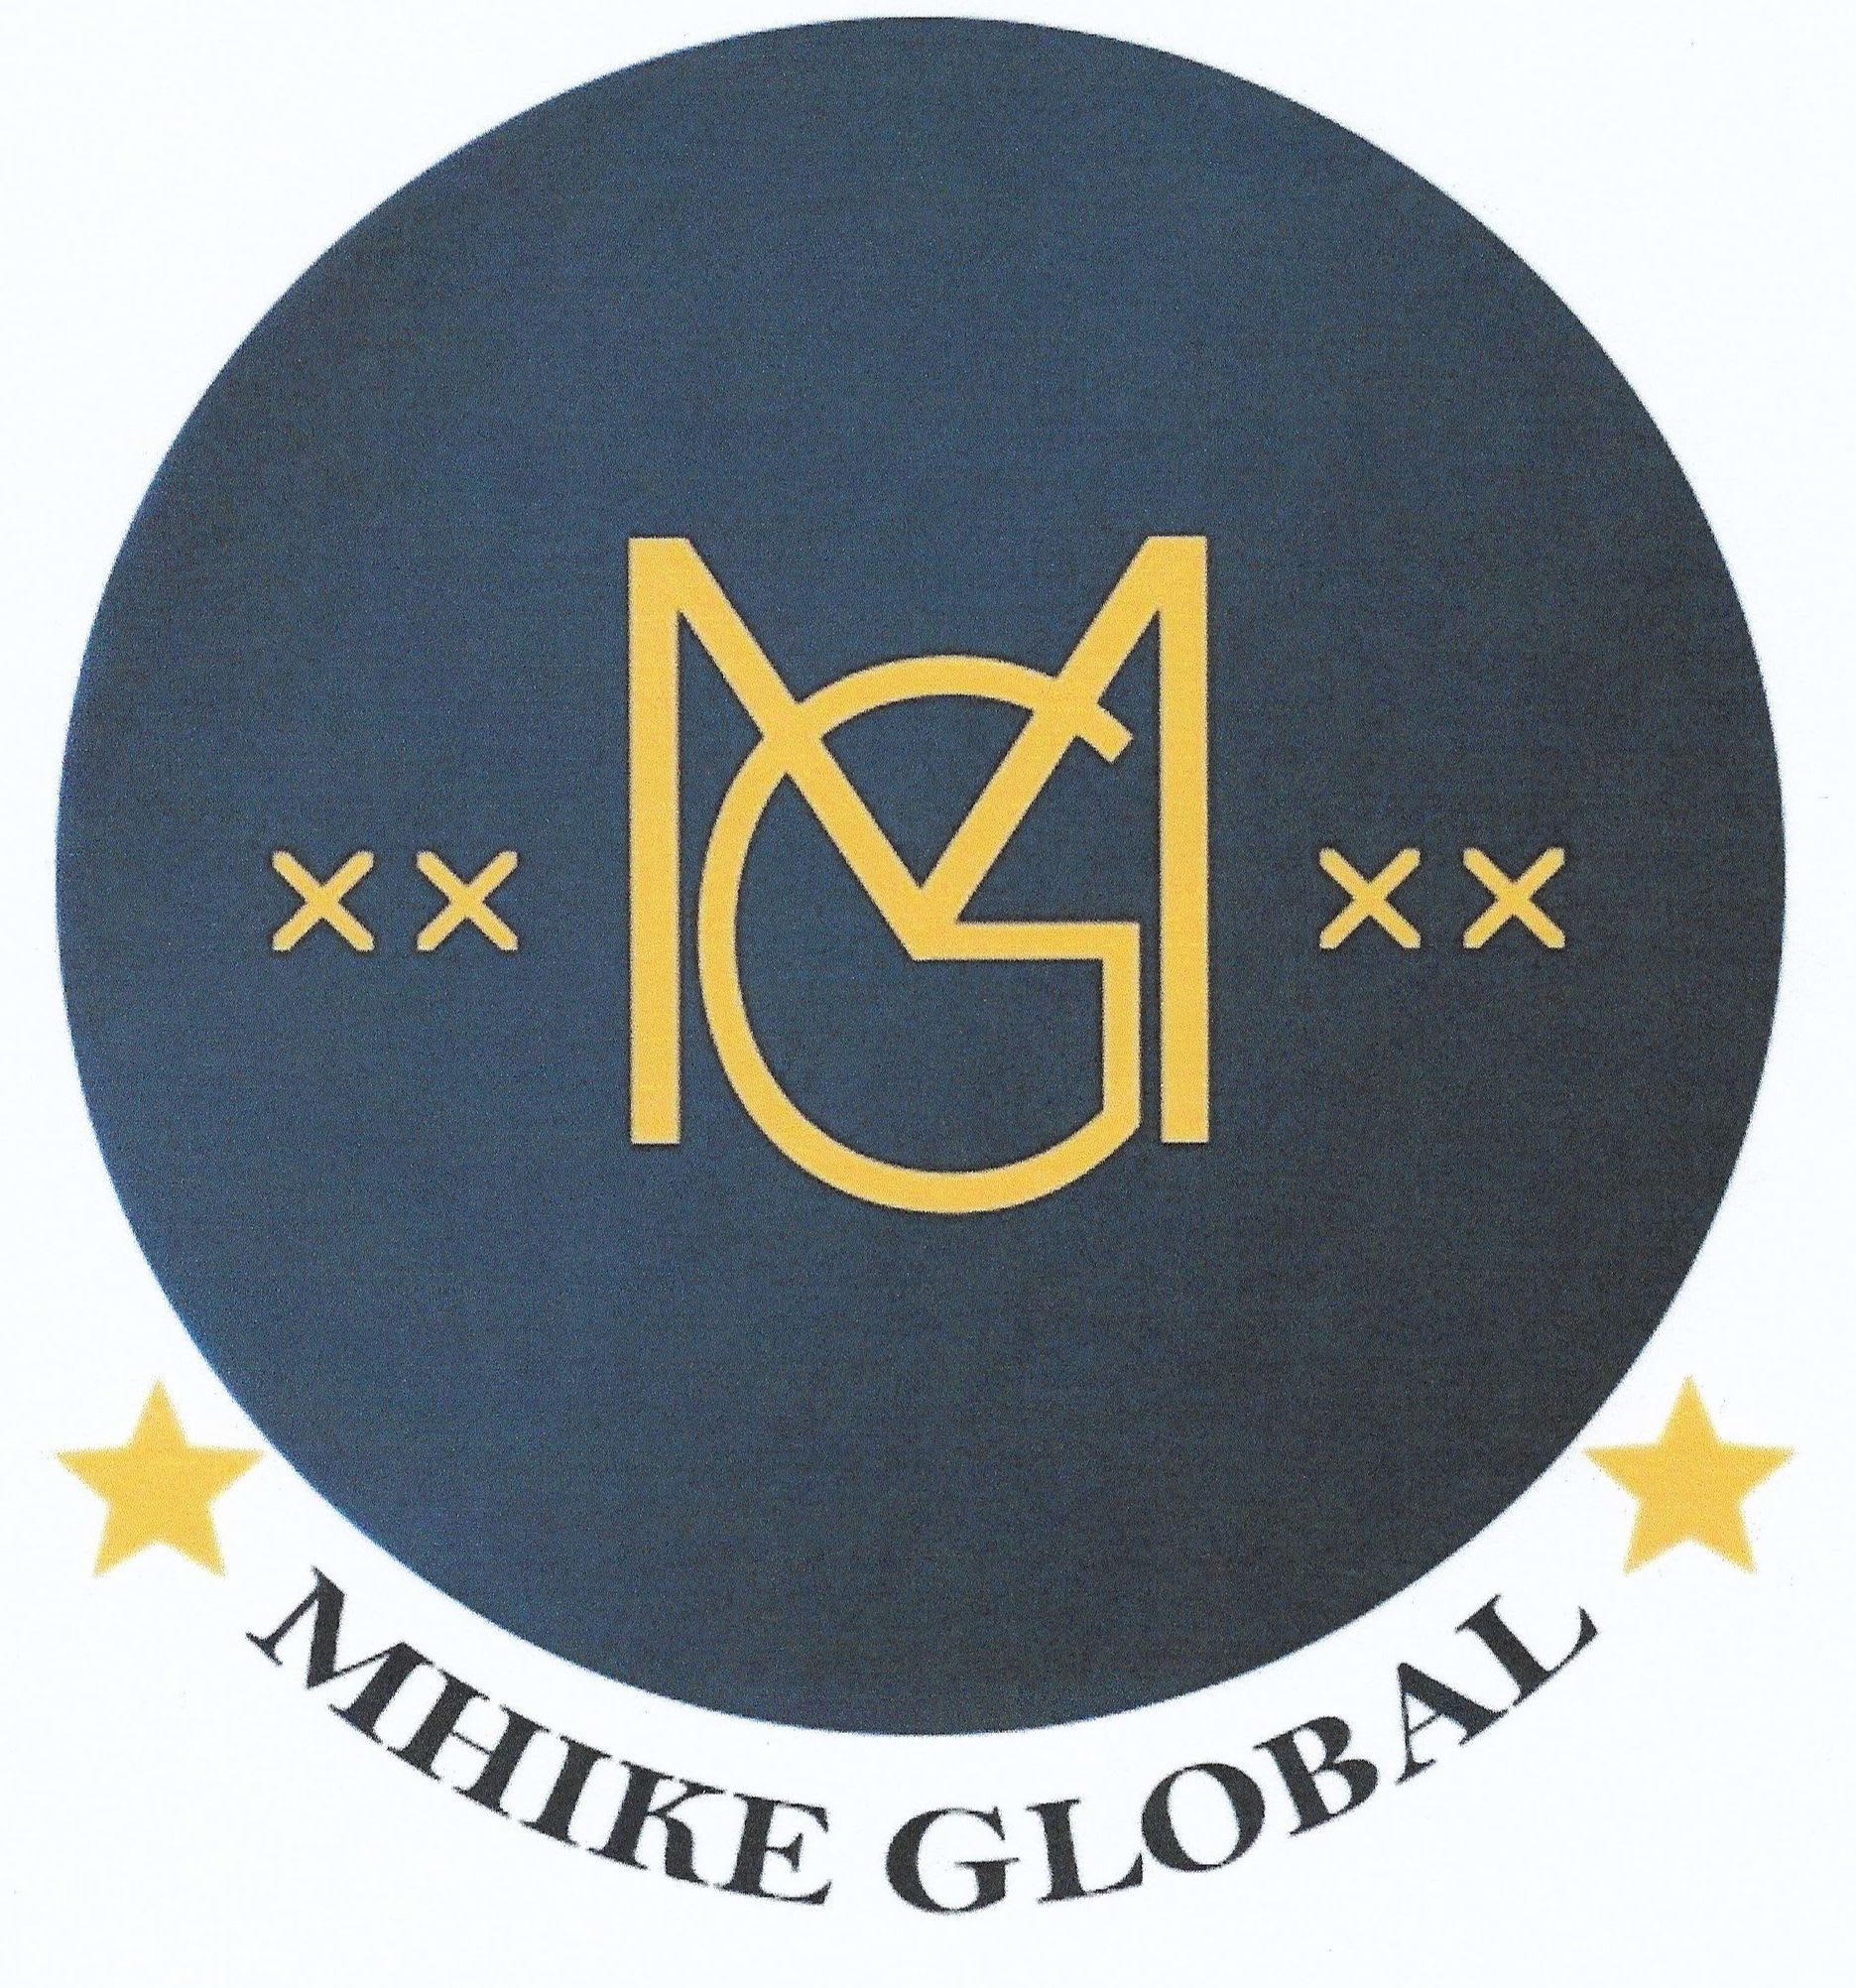 Mhike Global